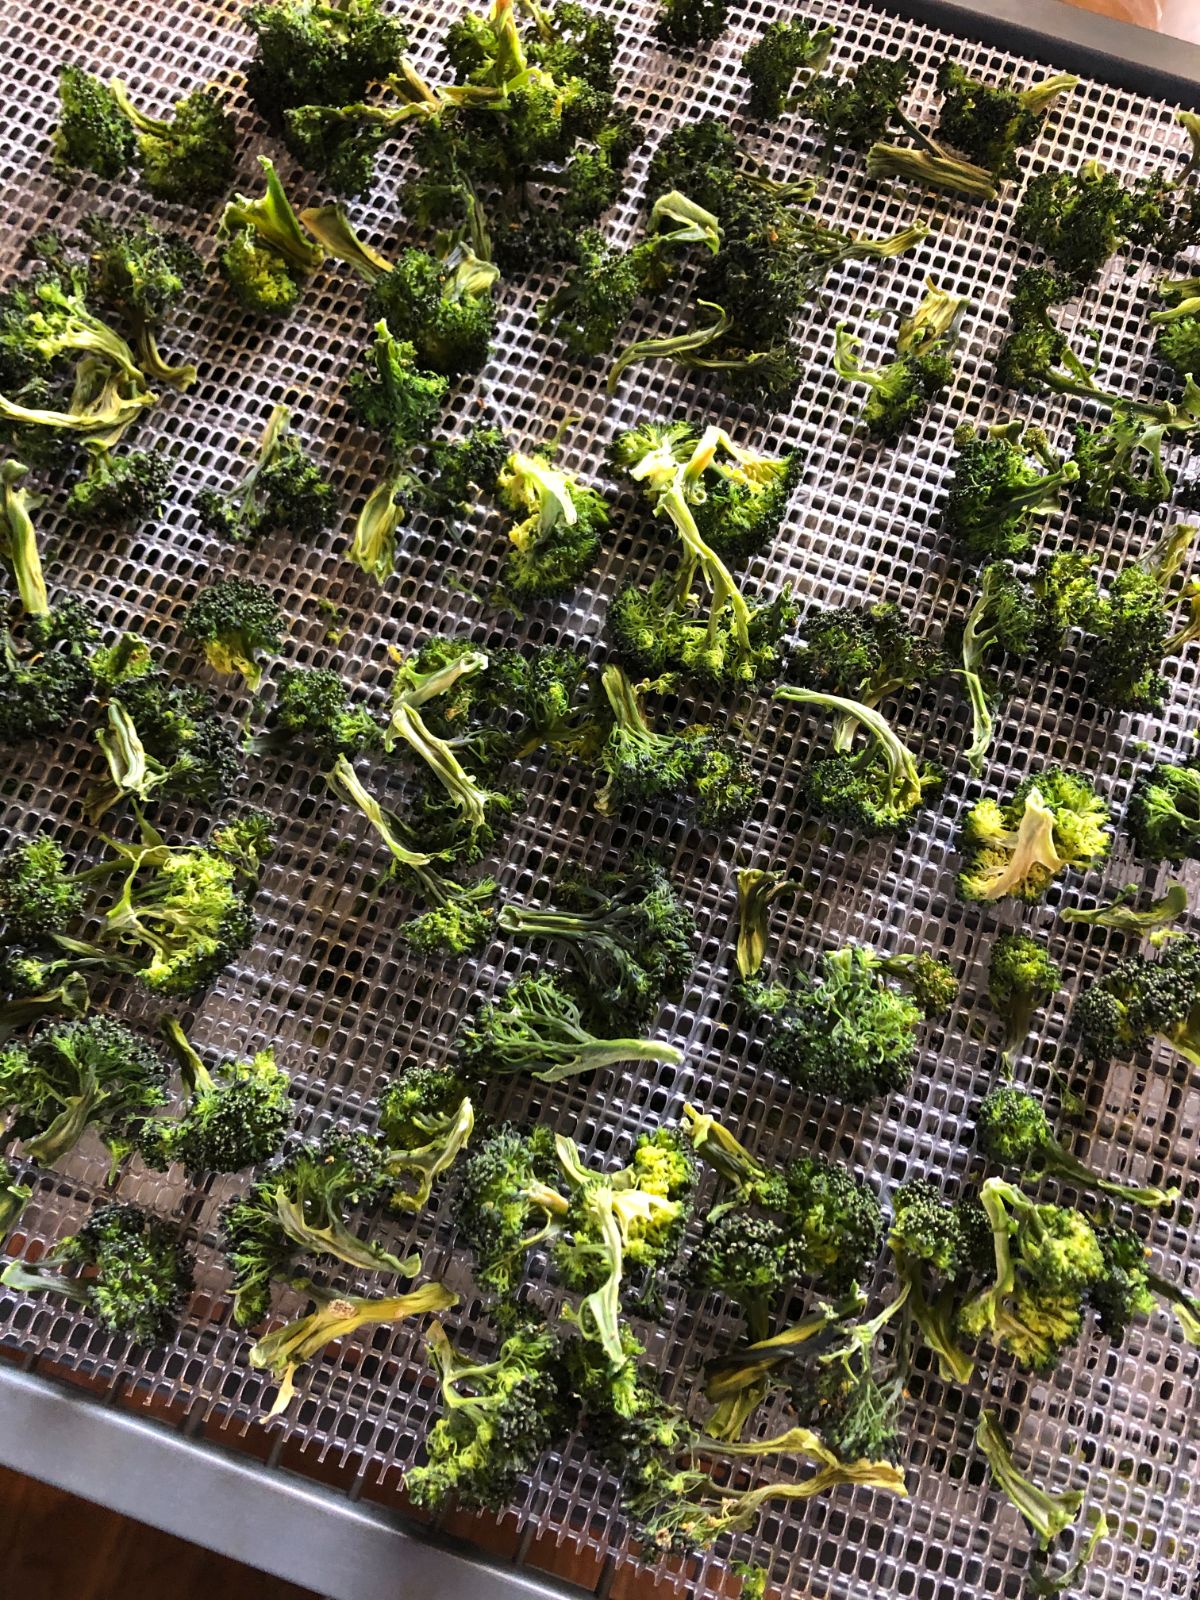 Dehydrated broccoli on dehydrator trays